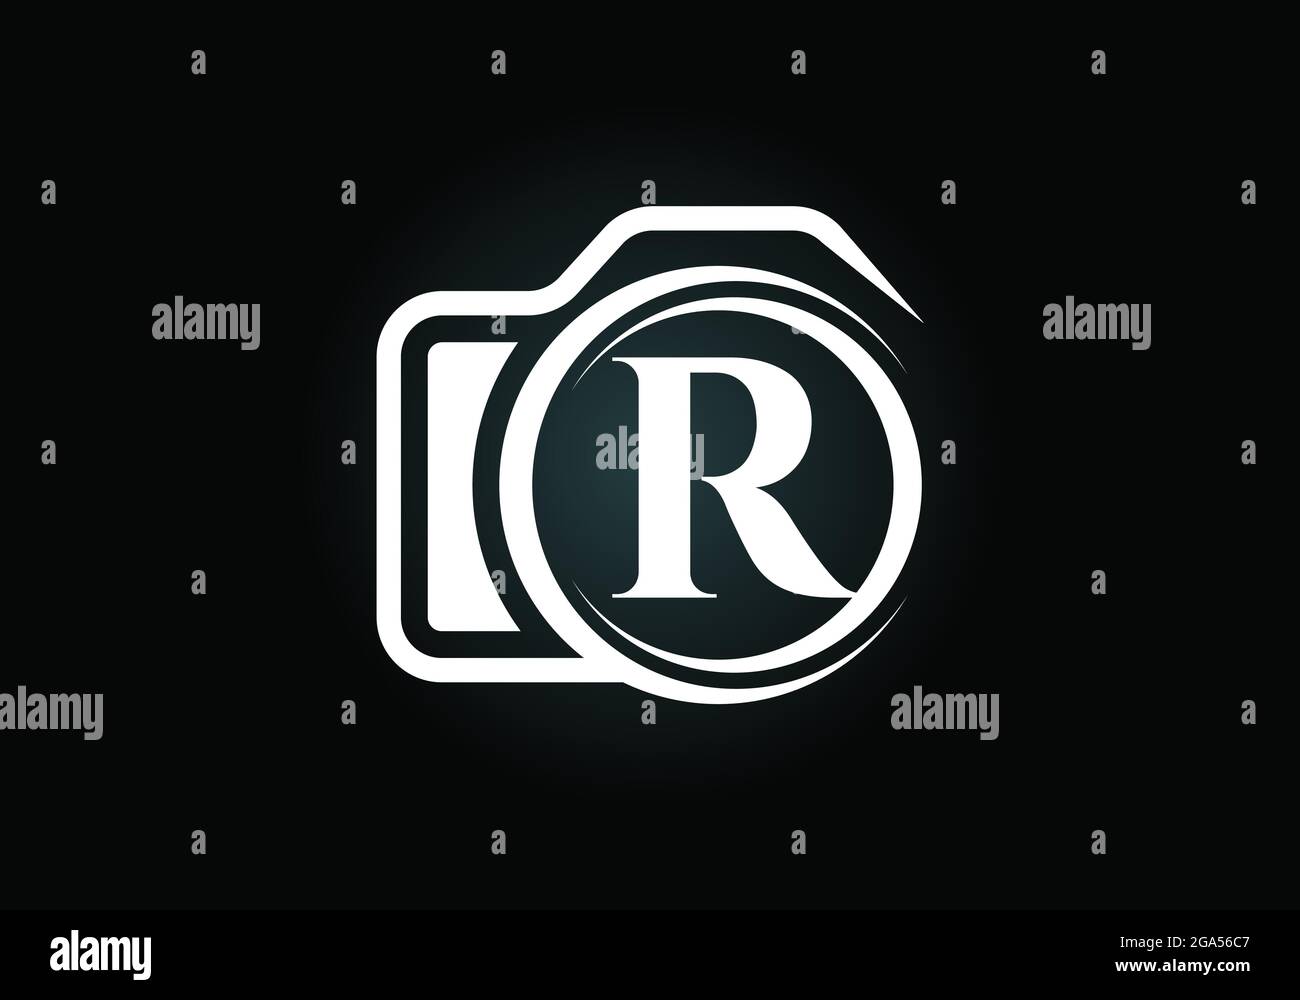 Lettera iniziale del monogramma R con l'icona di una telecamera. Immagine vettoriale del logo fotografico. Design moderno del logo per il settore della fotografia e l'azienda Illustrazione Vettoriale